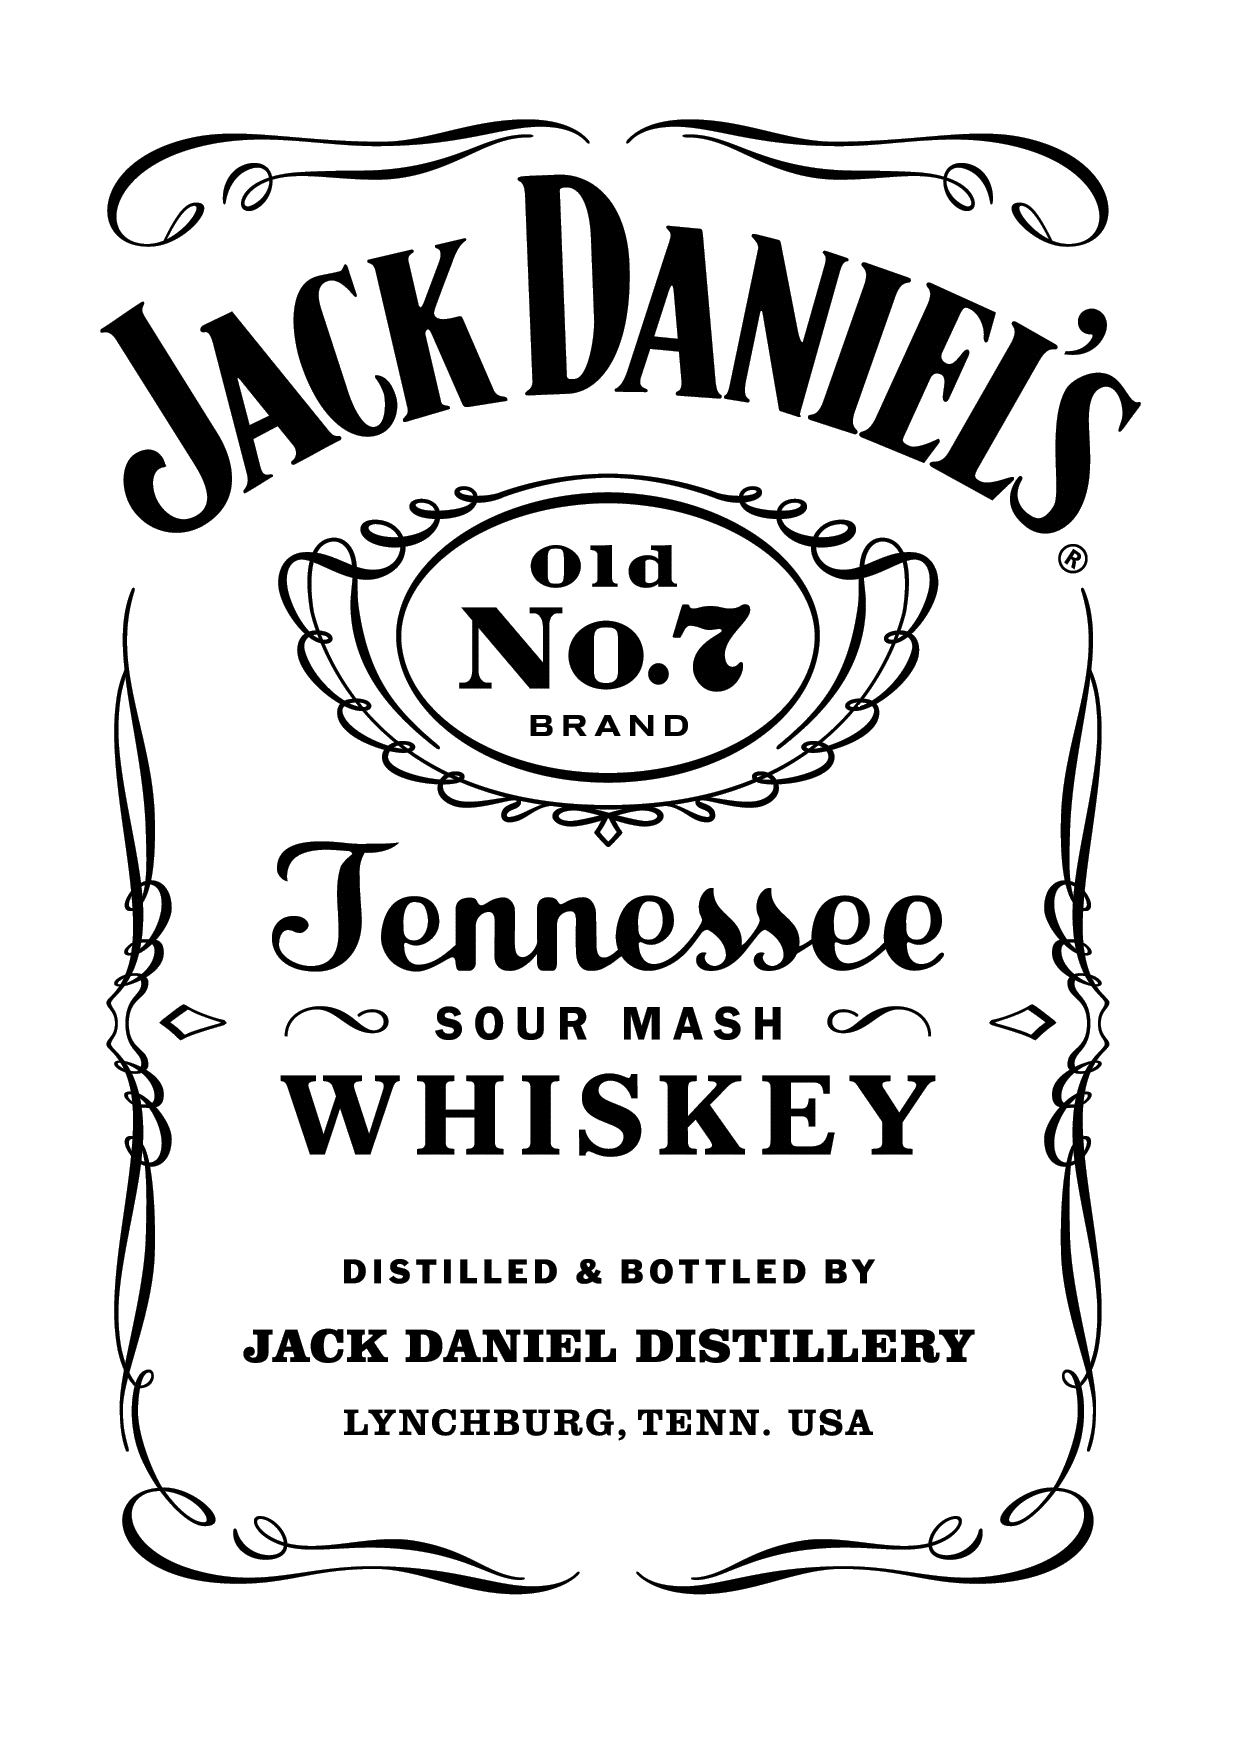 Old No. 7 Logo - Jack Daniel's Old No. 7. drawing. Jack daniels, Jack daniels logo